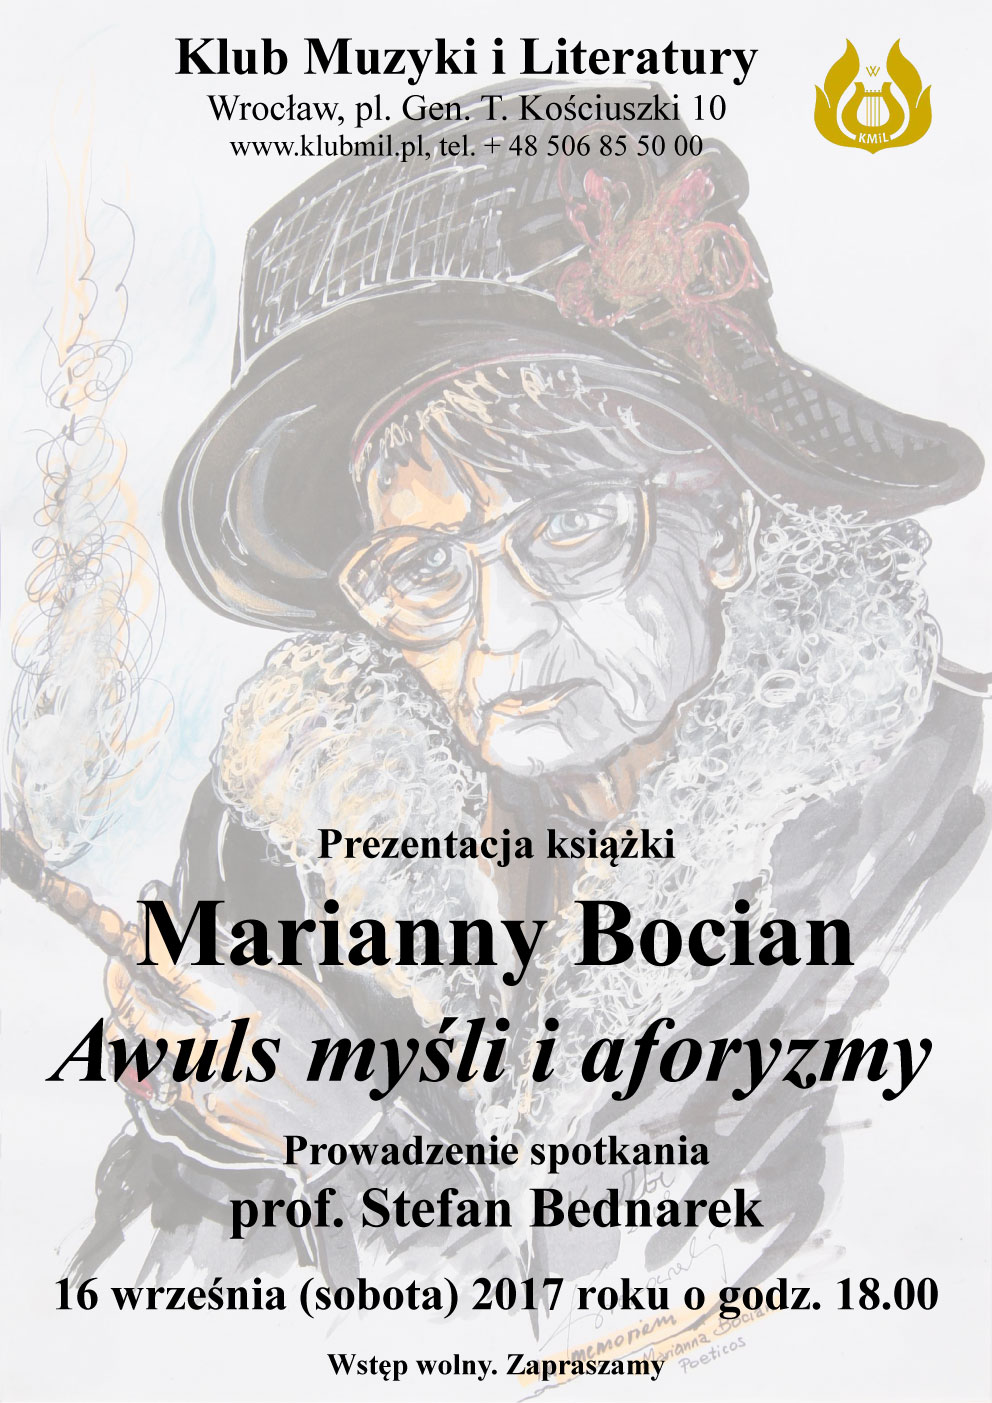  "Awuls myśli i aforyzmy", Marianna Bocian